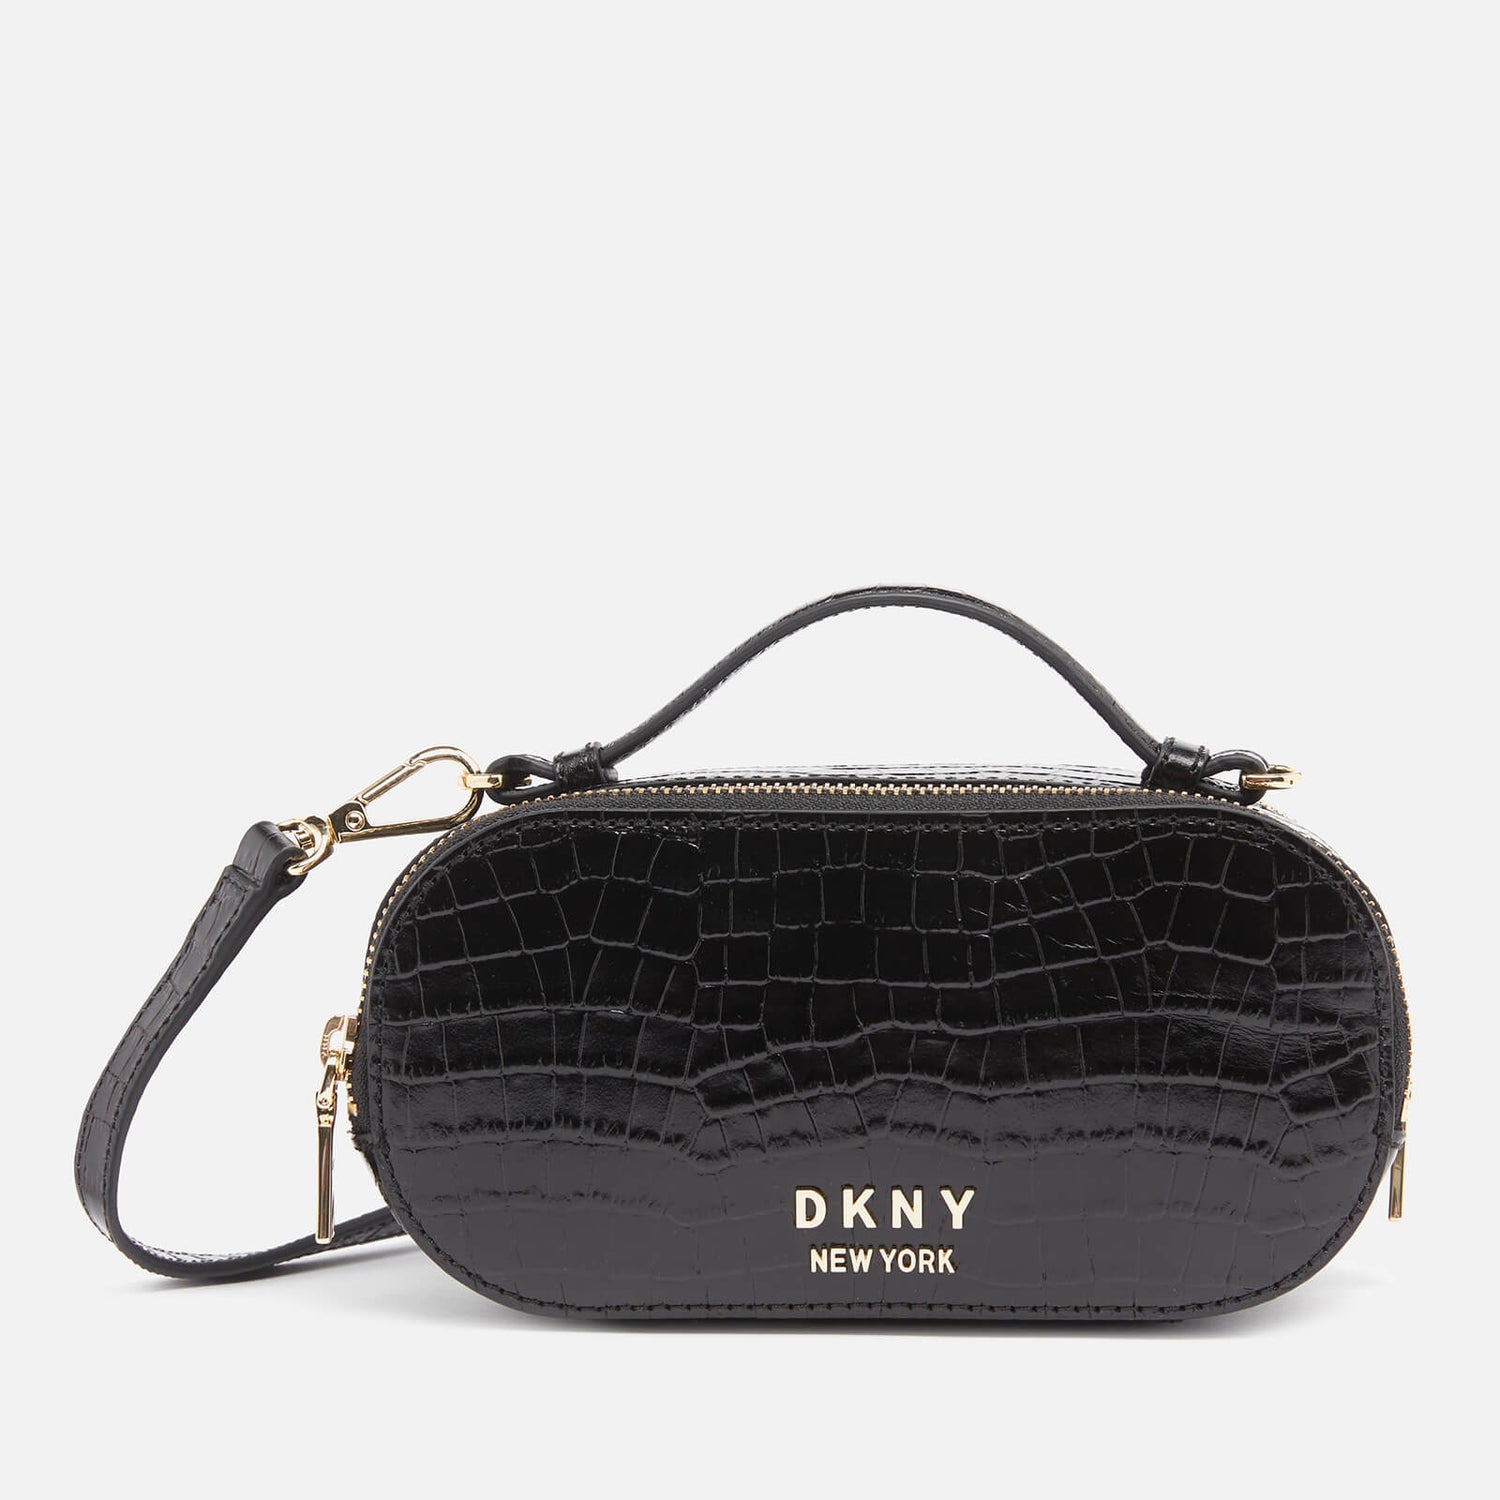 DKNY Women's Octavia Oval Croco Camera Bag - Black/Gold